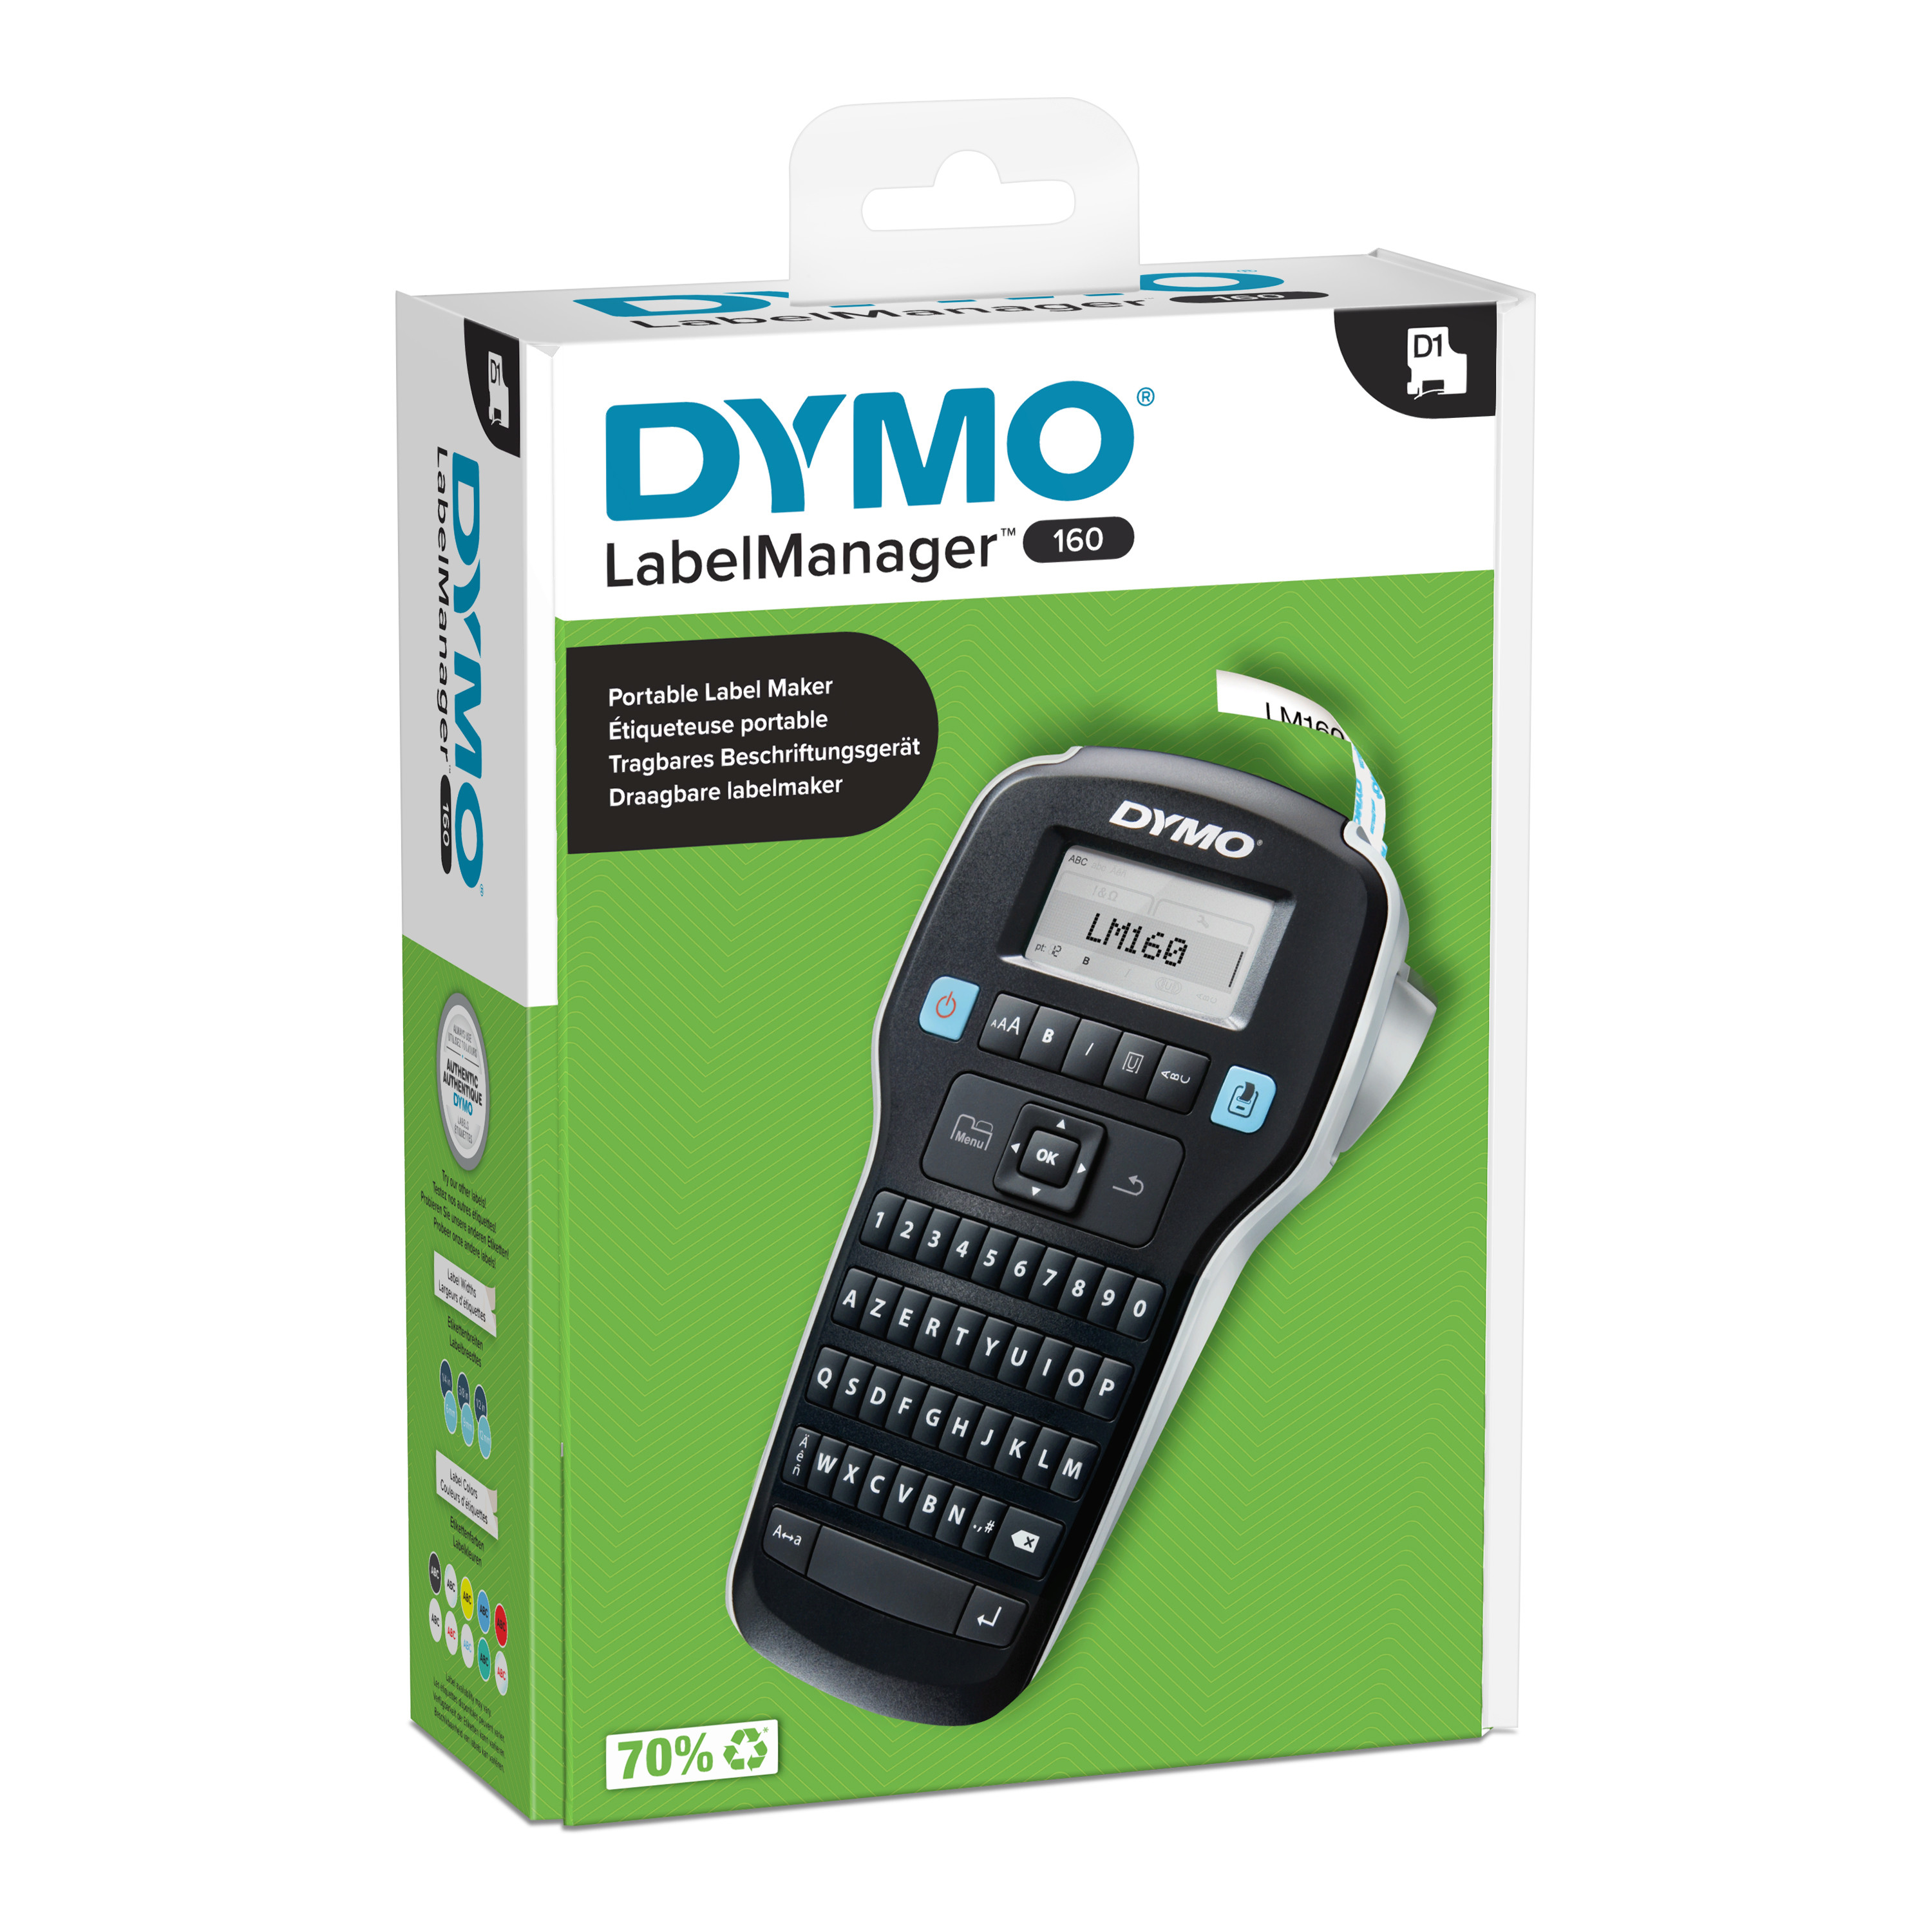 Dymo 2174450, Etikettendrucker, DYMO LabelManager 160 mm 2174450 (BILD1)